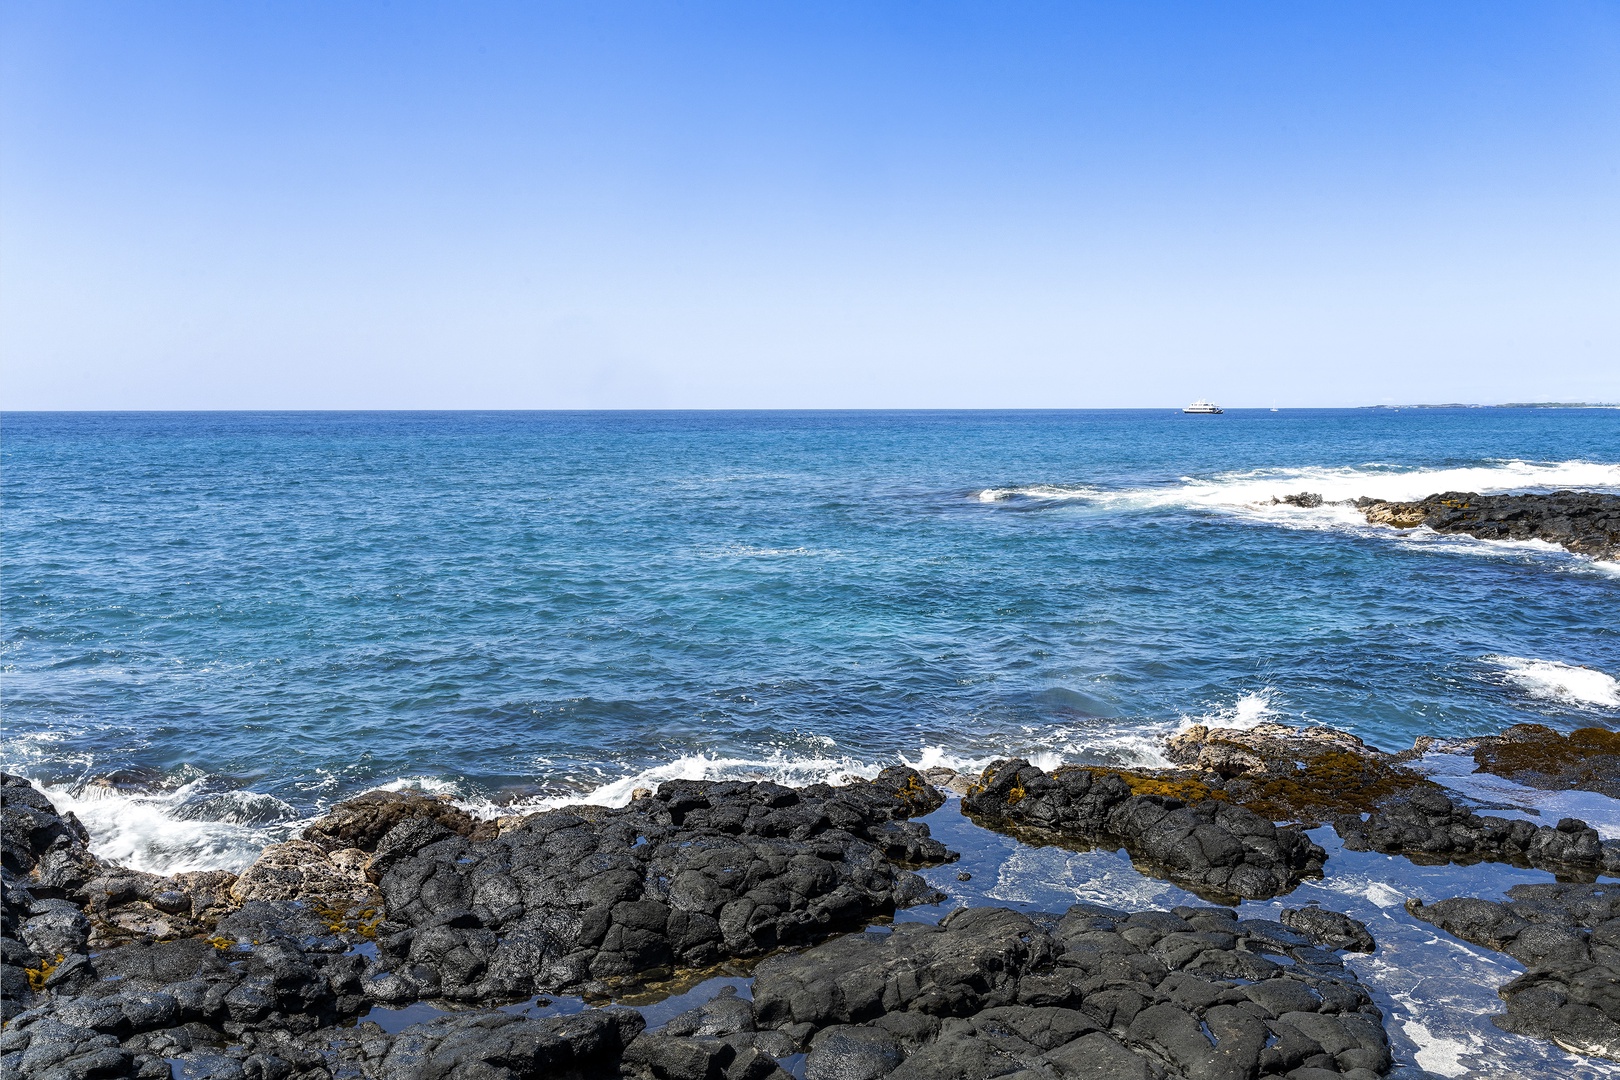 Kailua Kona Vacation Rentals, Dolphin Manor - Views  for miles!